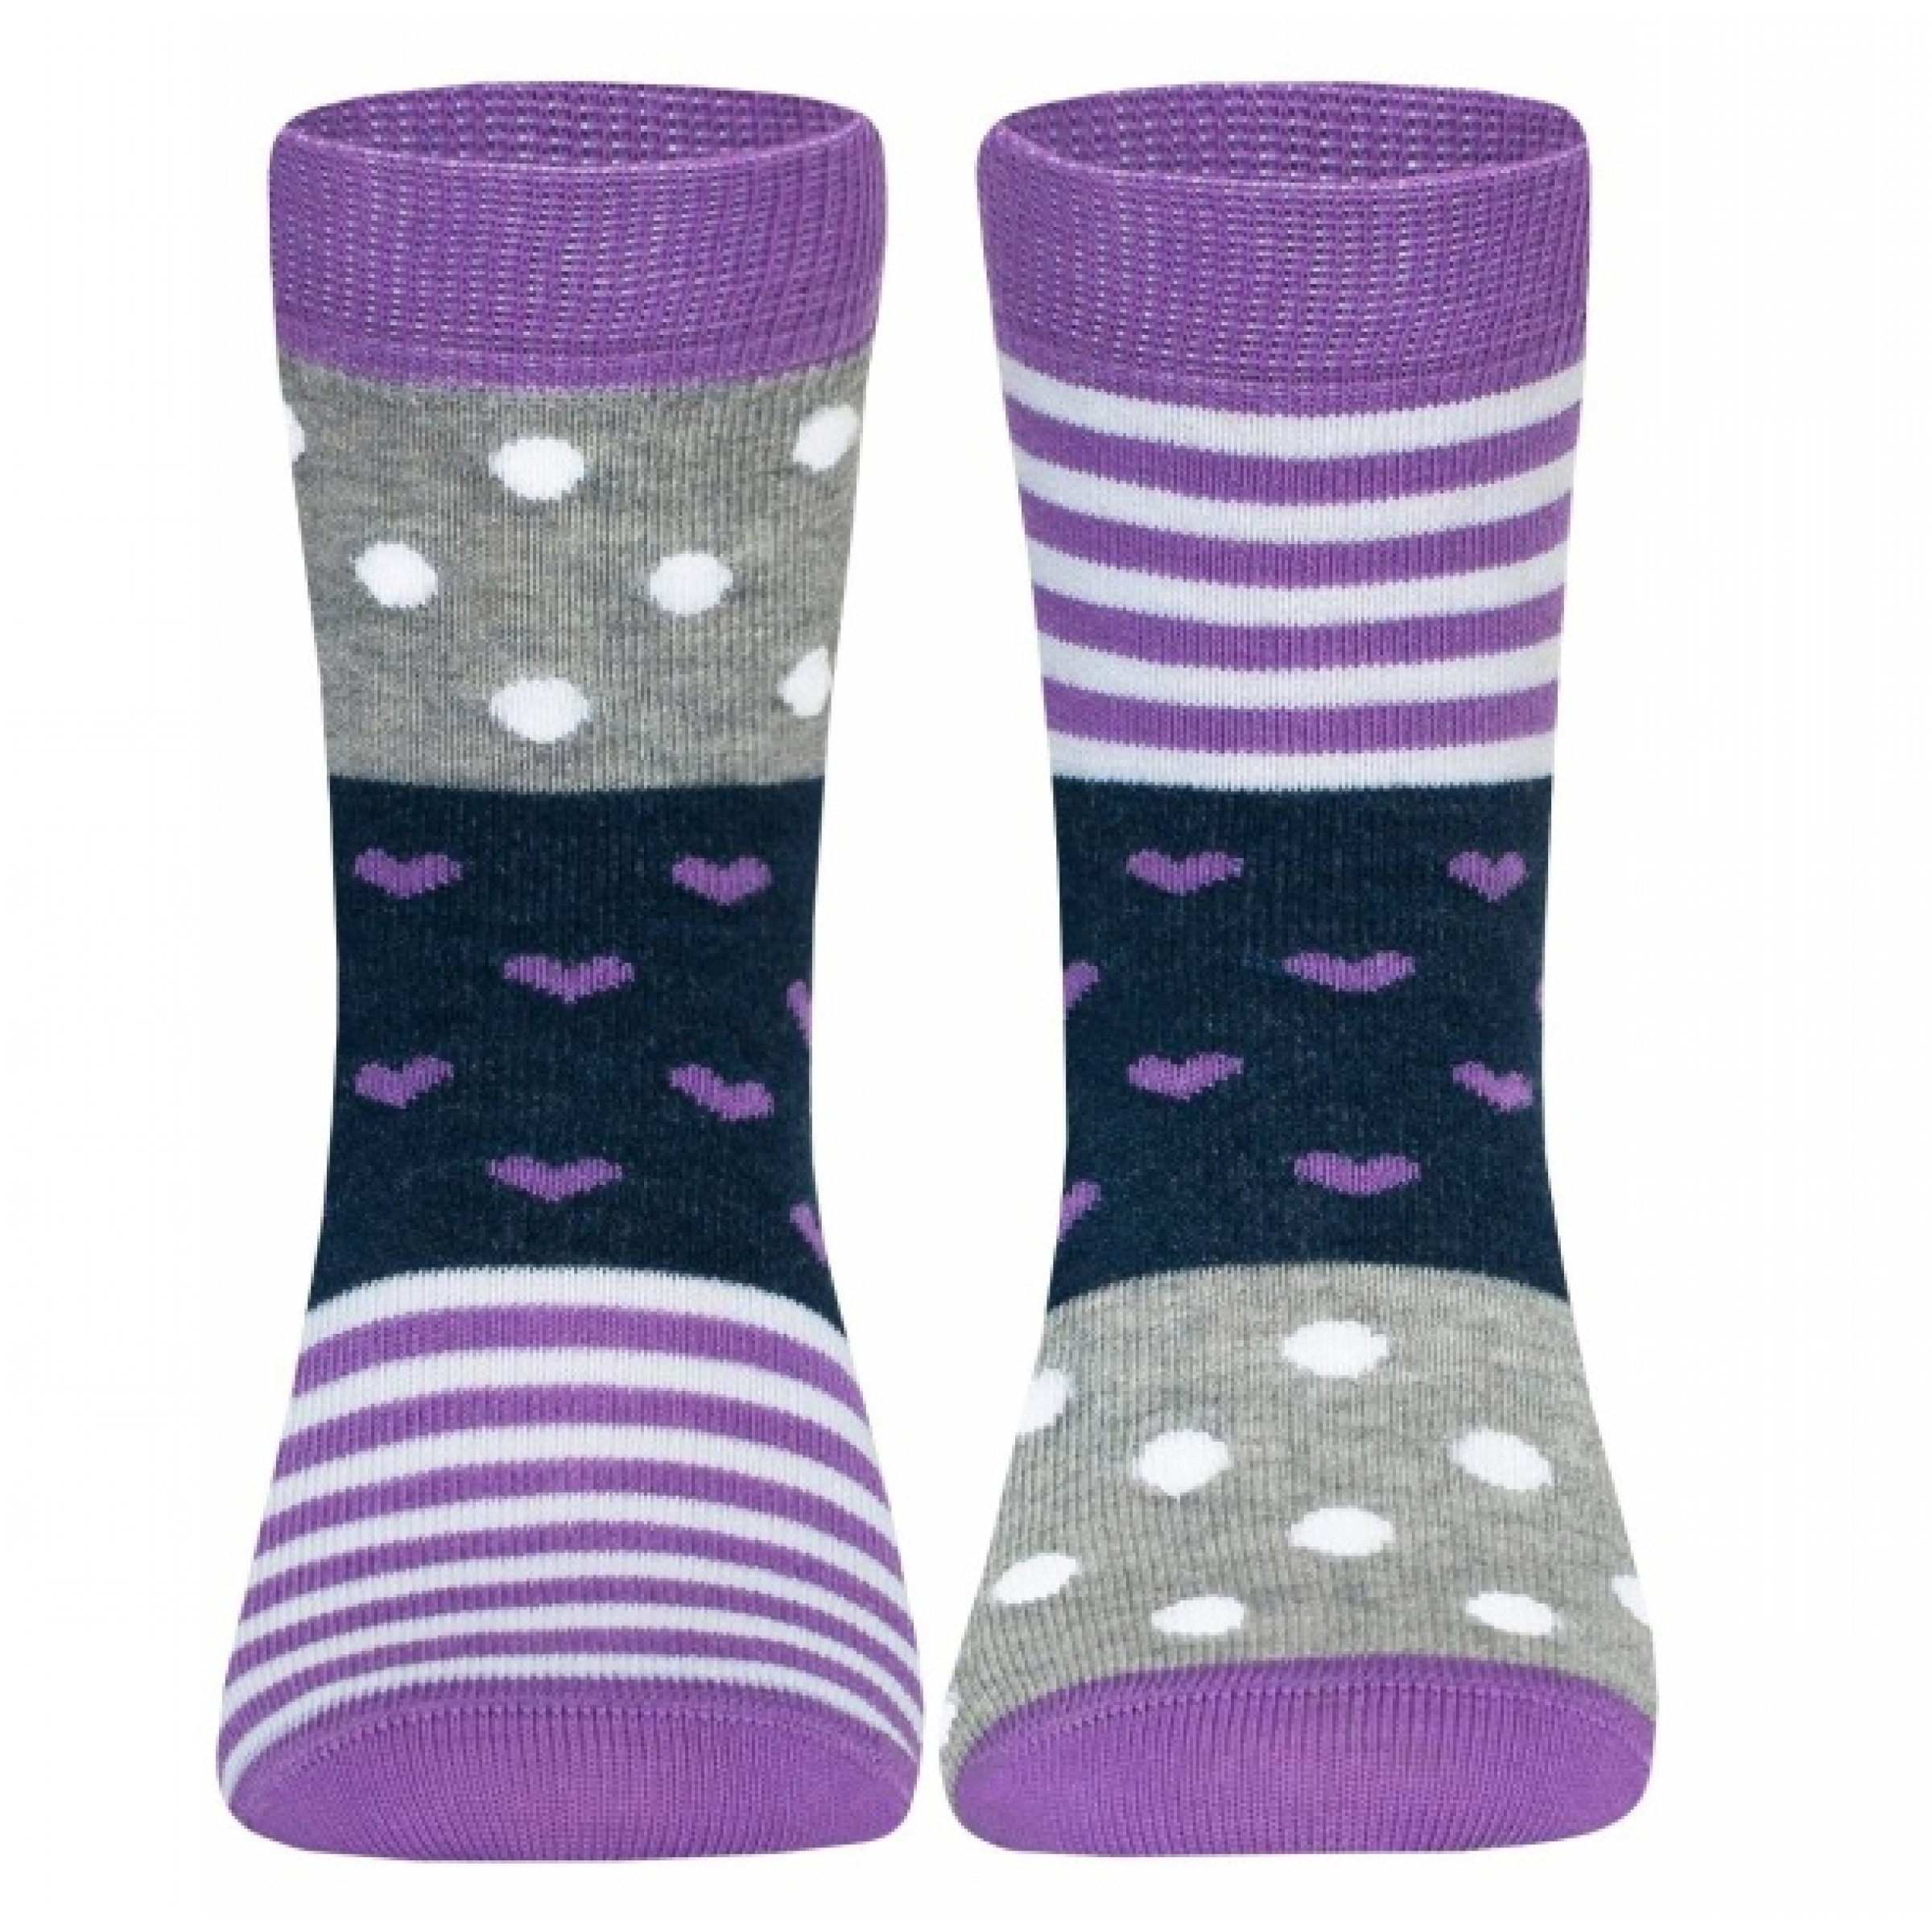 Детские носки Conte Веселые ножки 24-26 размер серо-сиреневый цвет